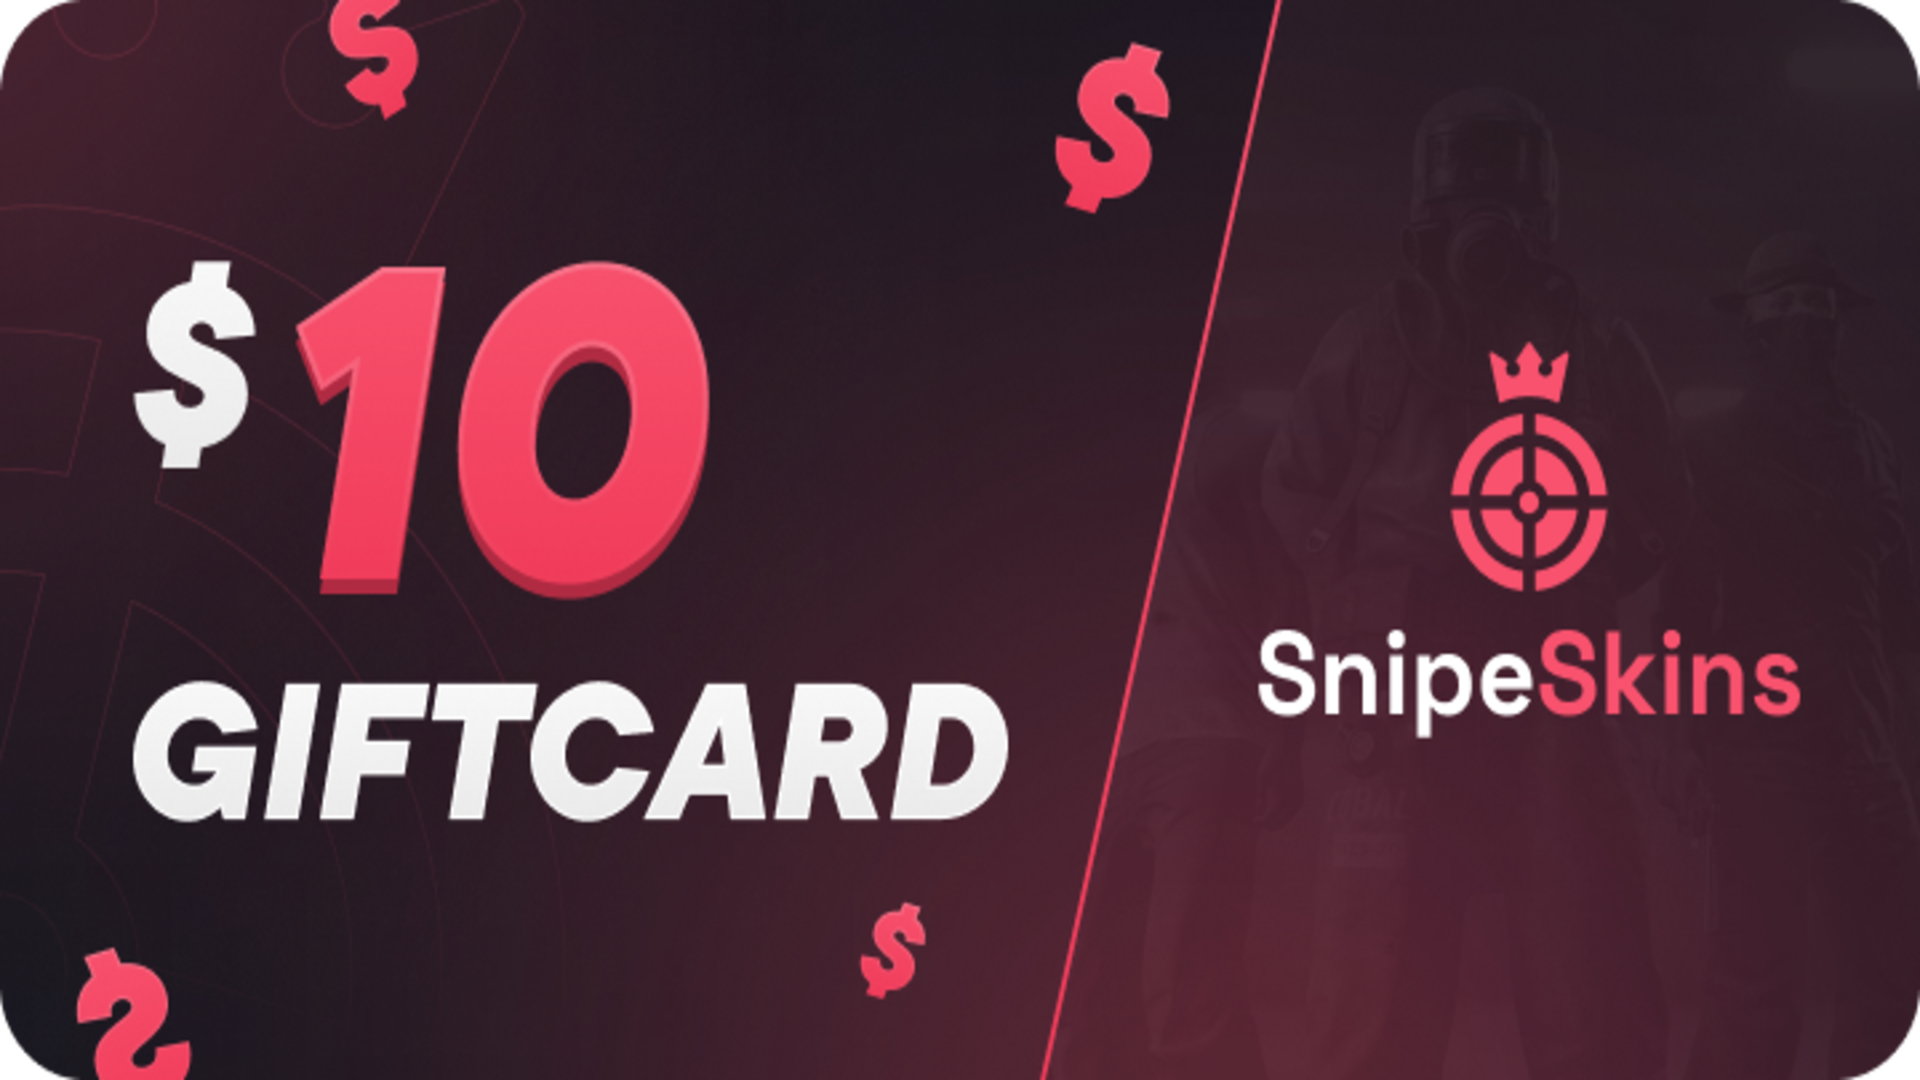 (12.52$) SnipeSkins $10 Gift Card